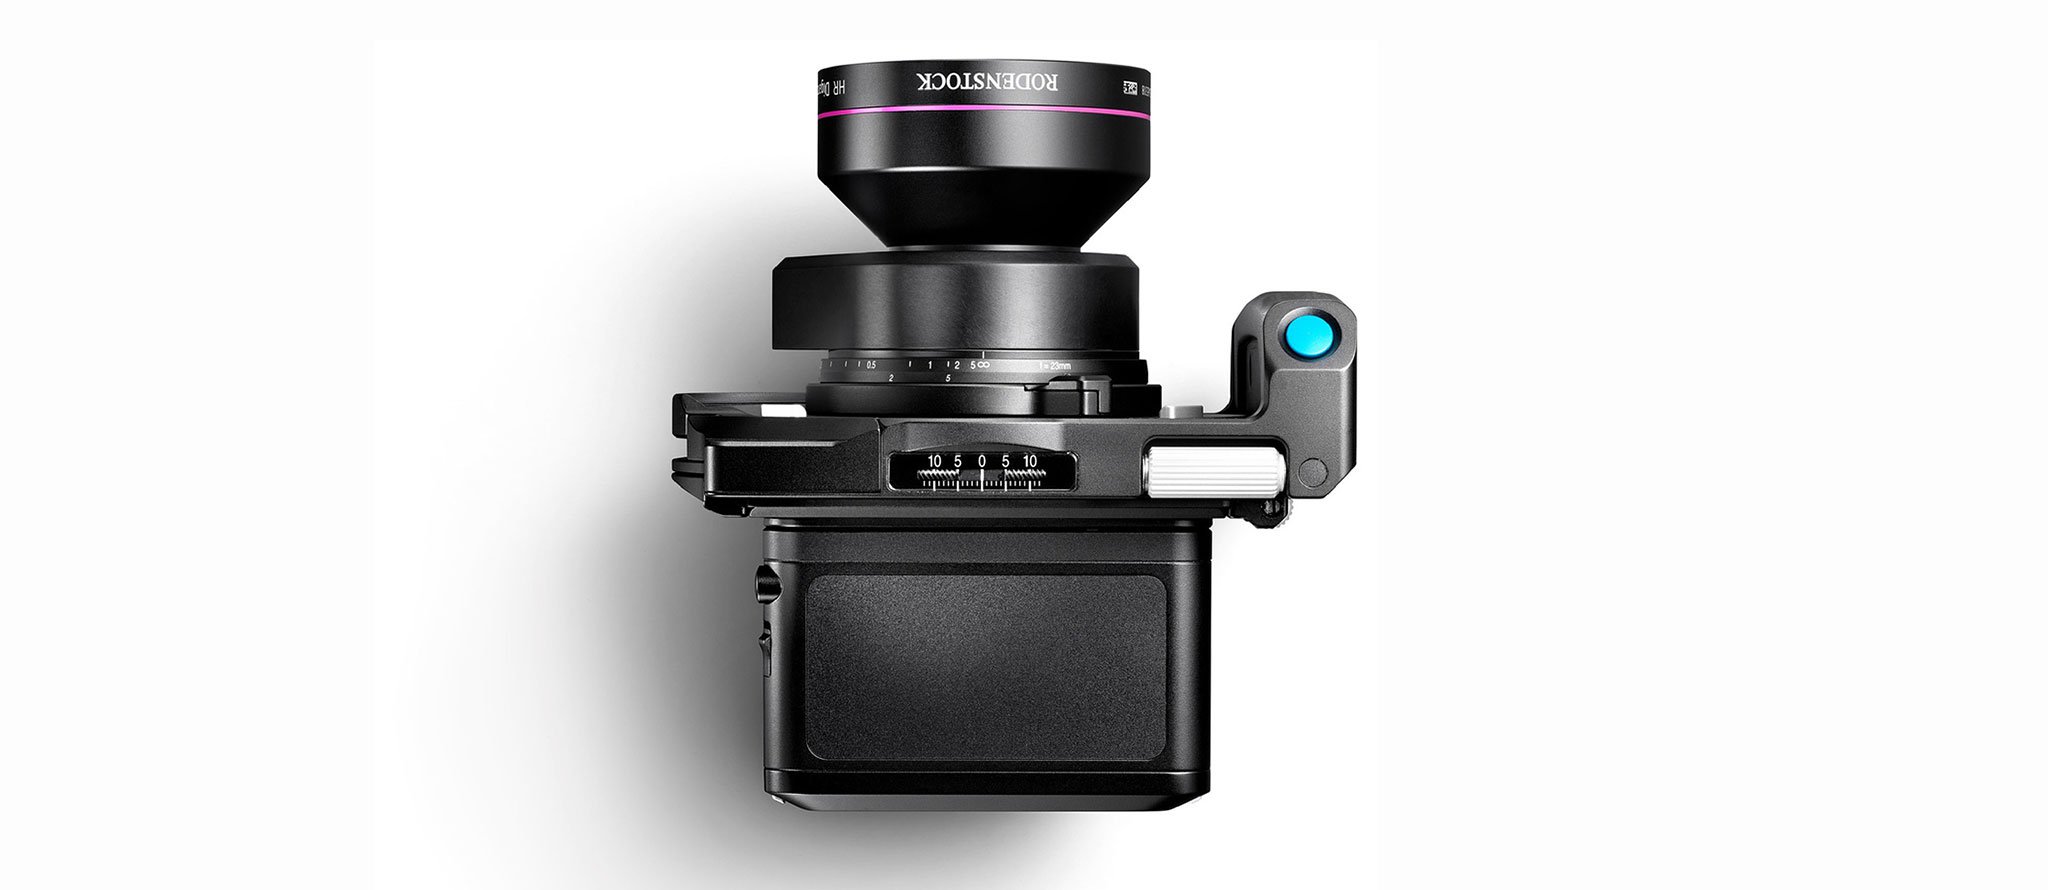 Phase One ra mắt máy ảnh mới nhất với cảm biến 150MP, trùm cuối trong làng máy ảnh medium format